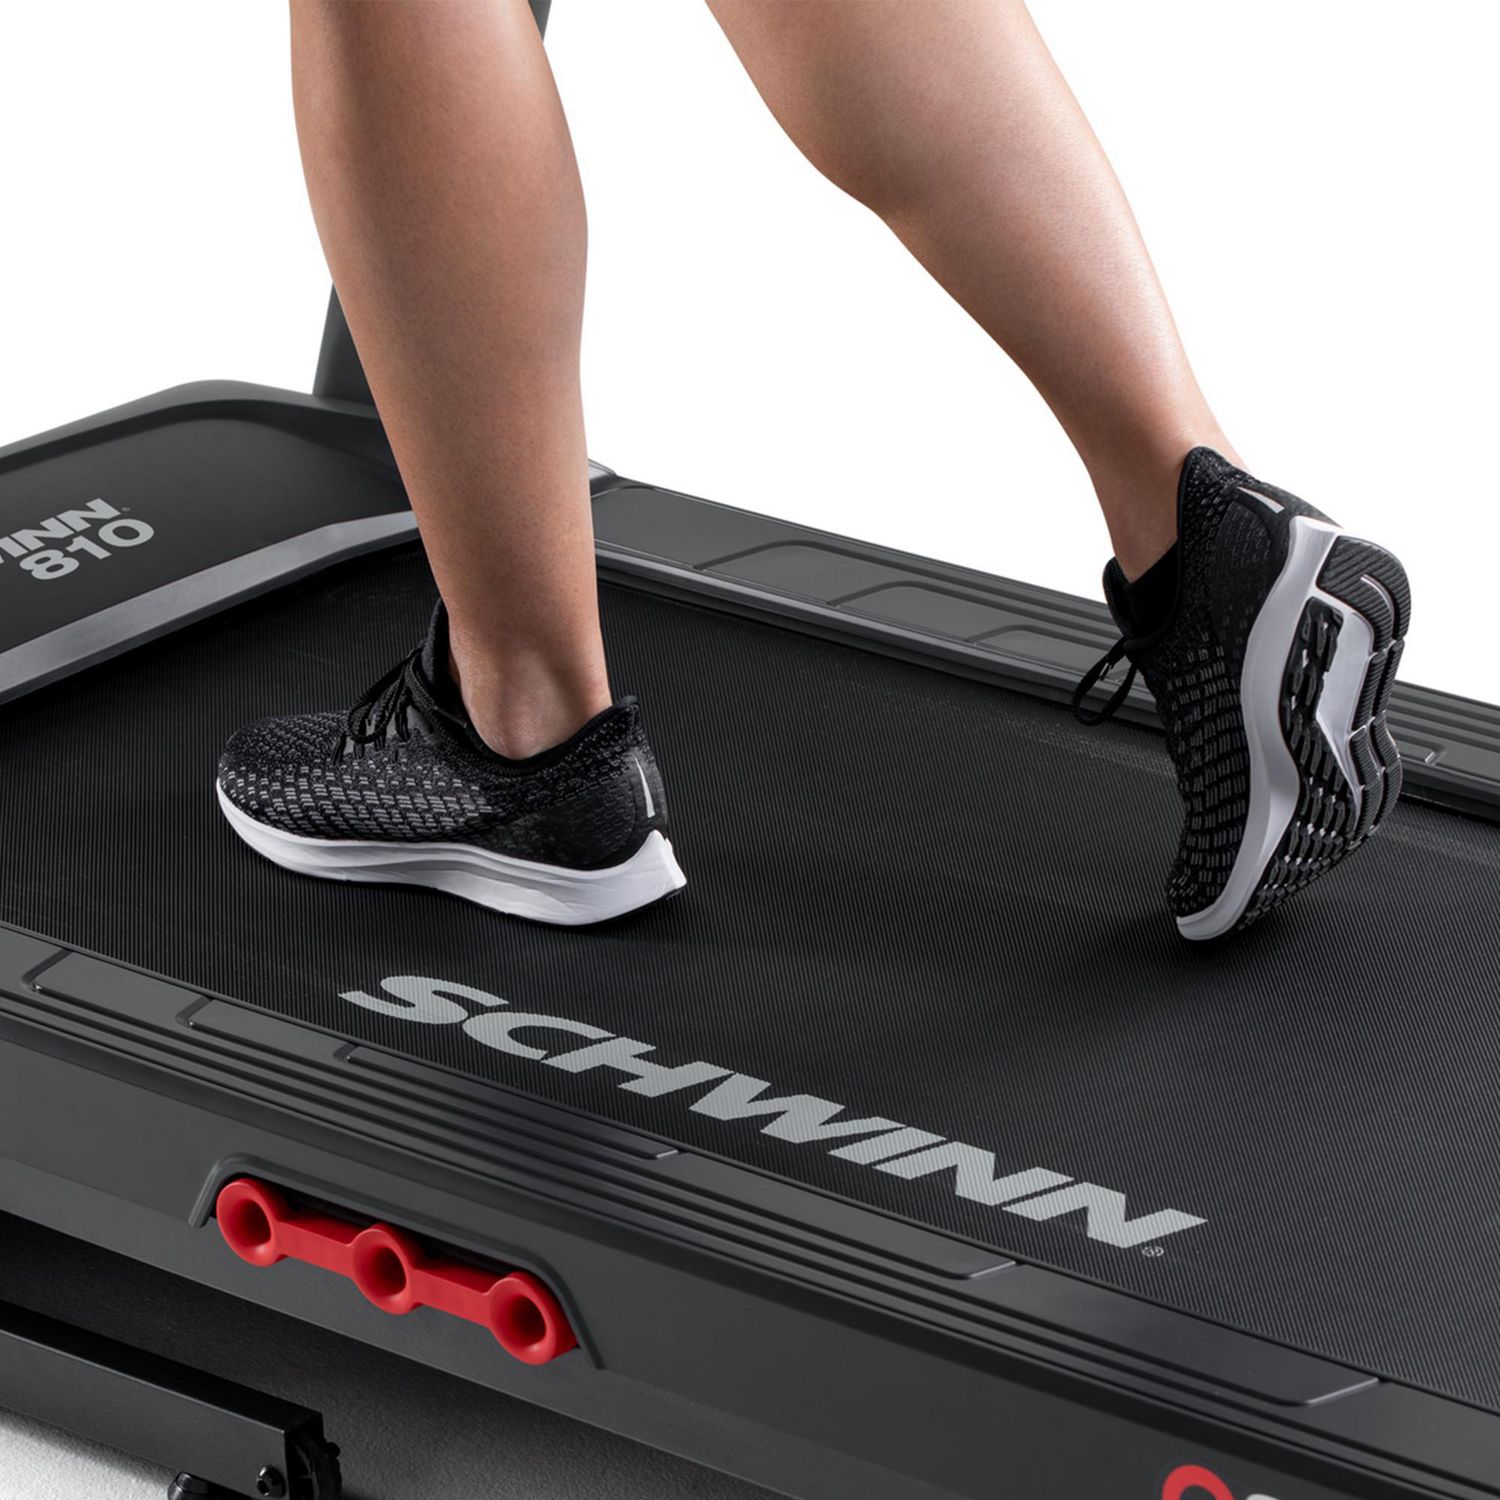 schwinn 810 treadmill canada